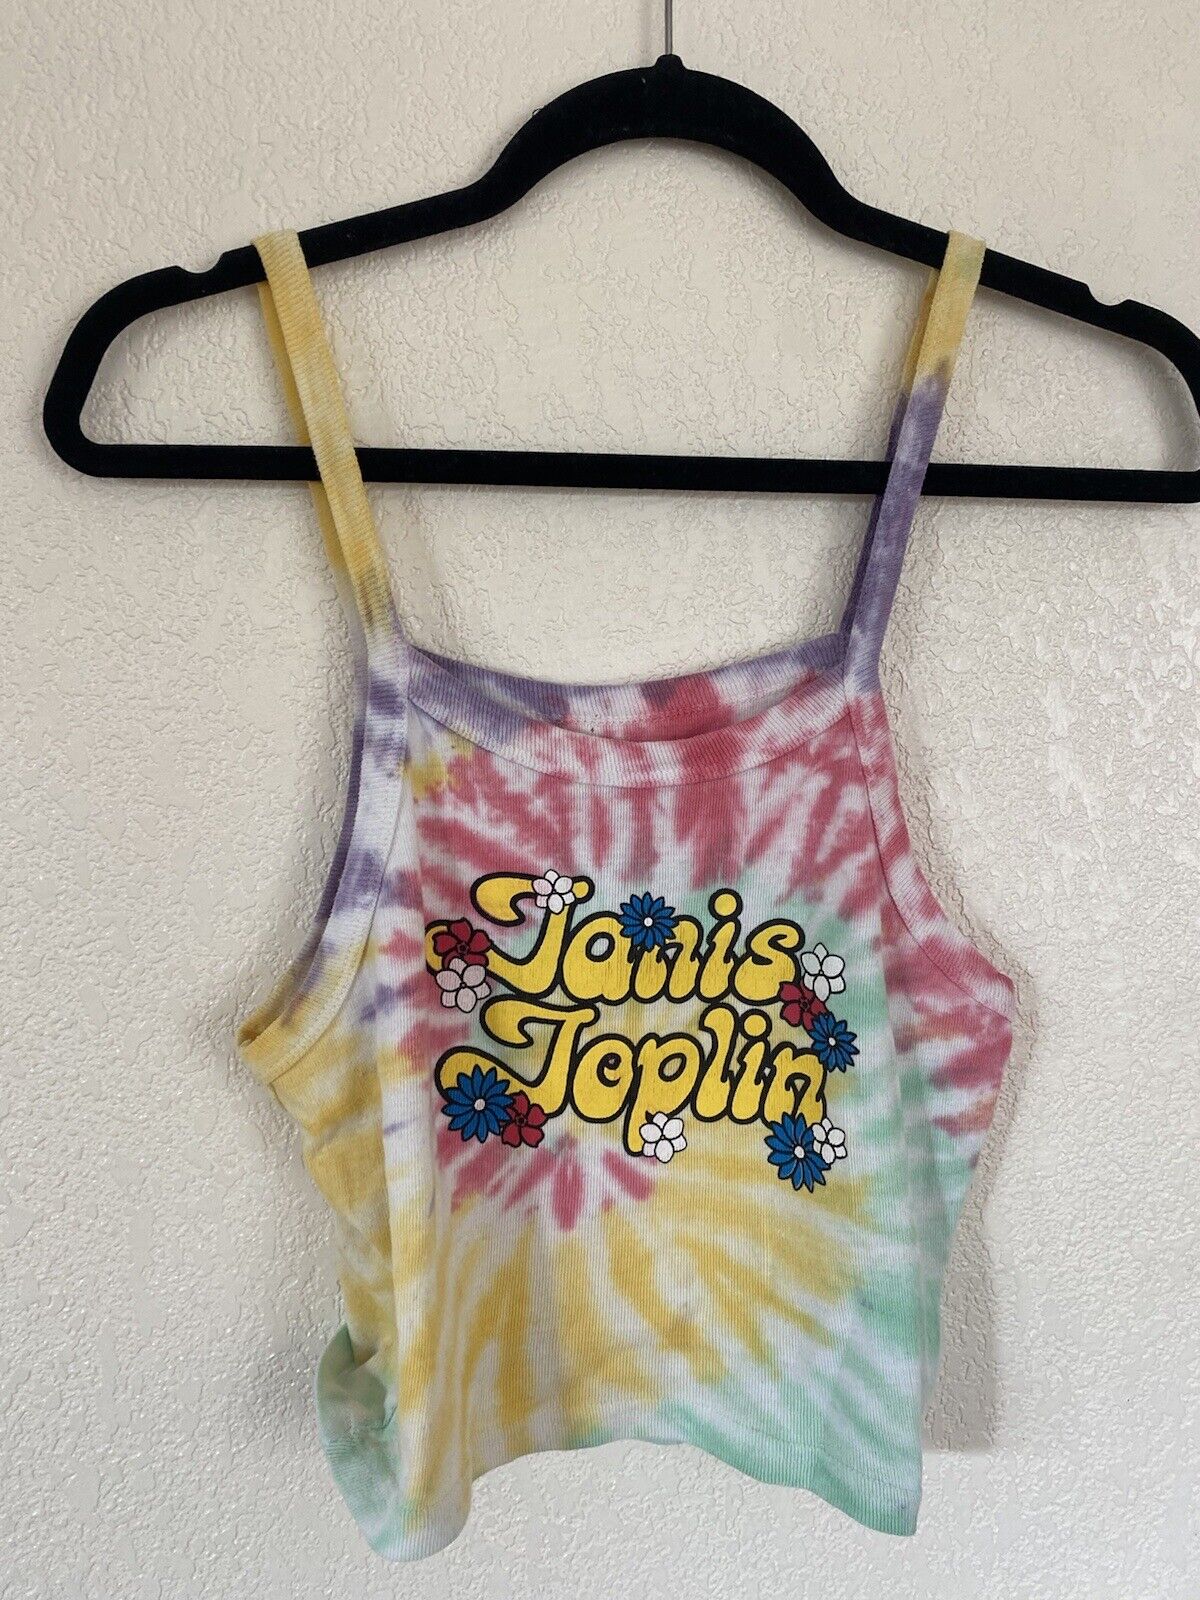 Tie Dye Crop Tank Top - Janis Joplin - Women’s Medium # 2648